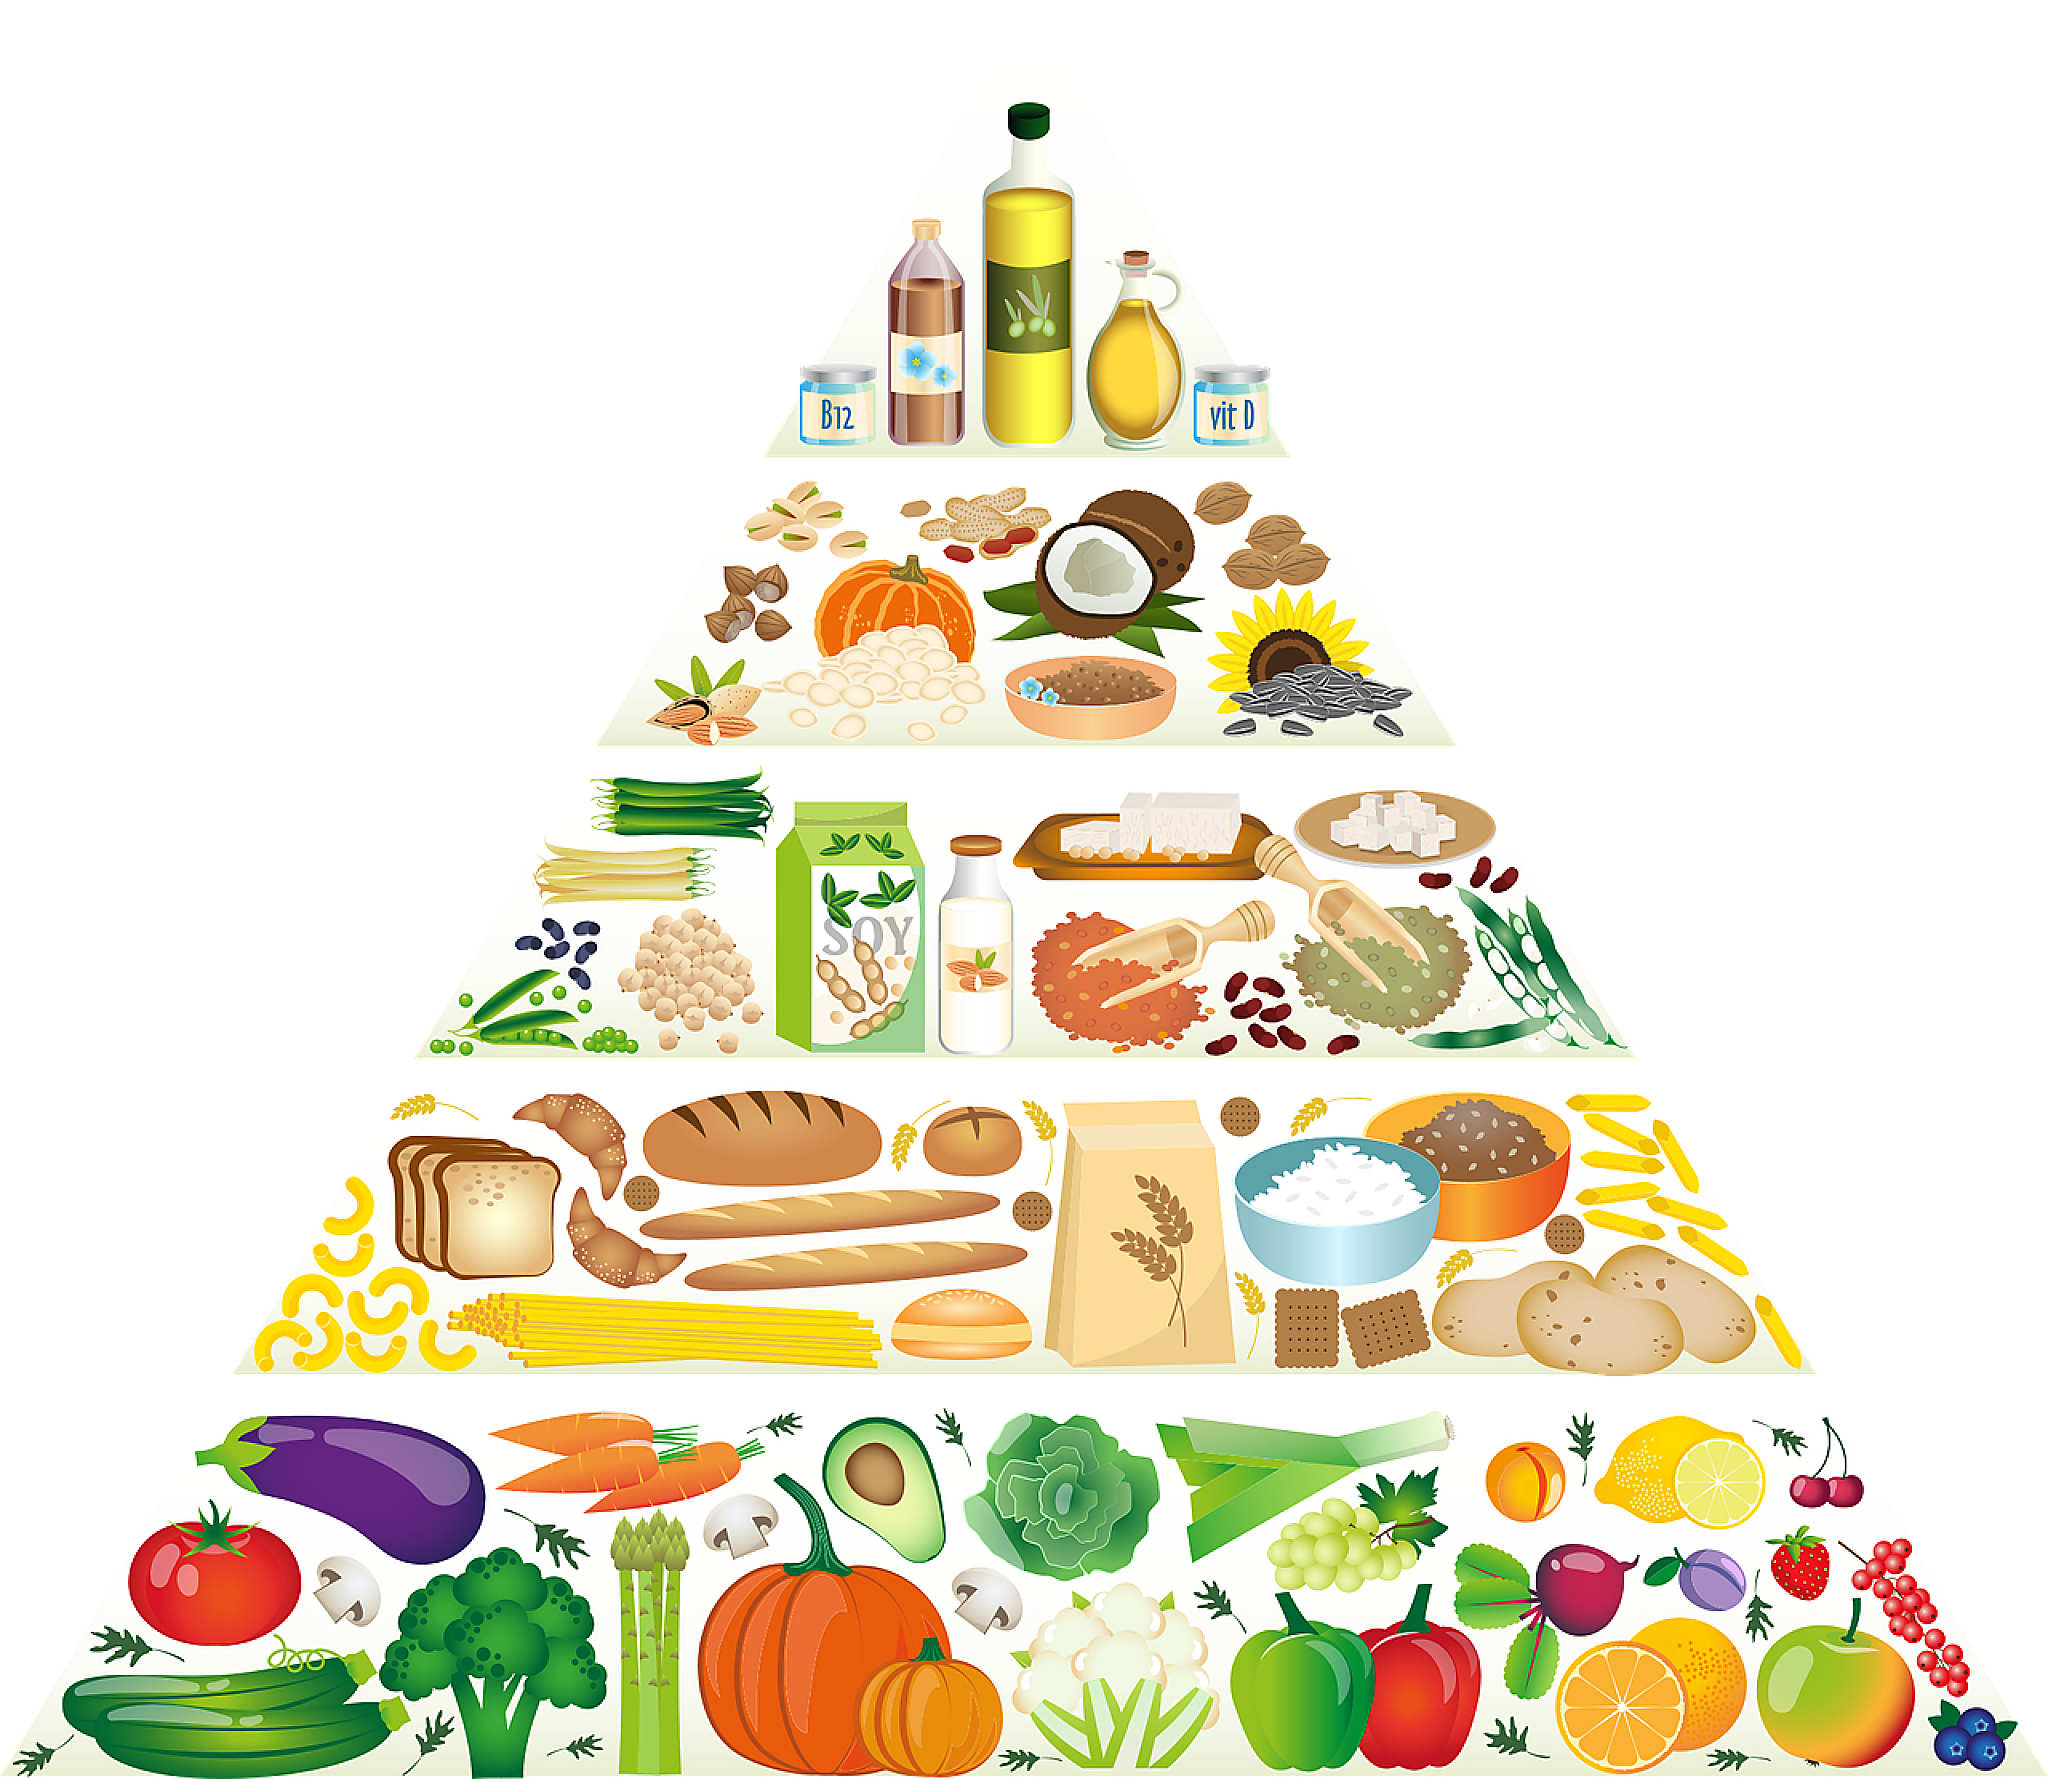 Пирамида питания здорового человека воз